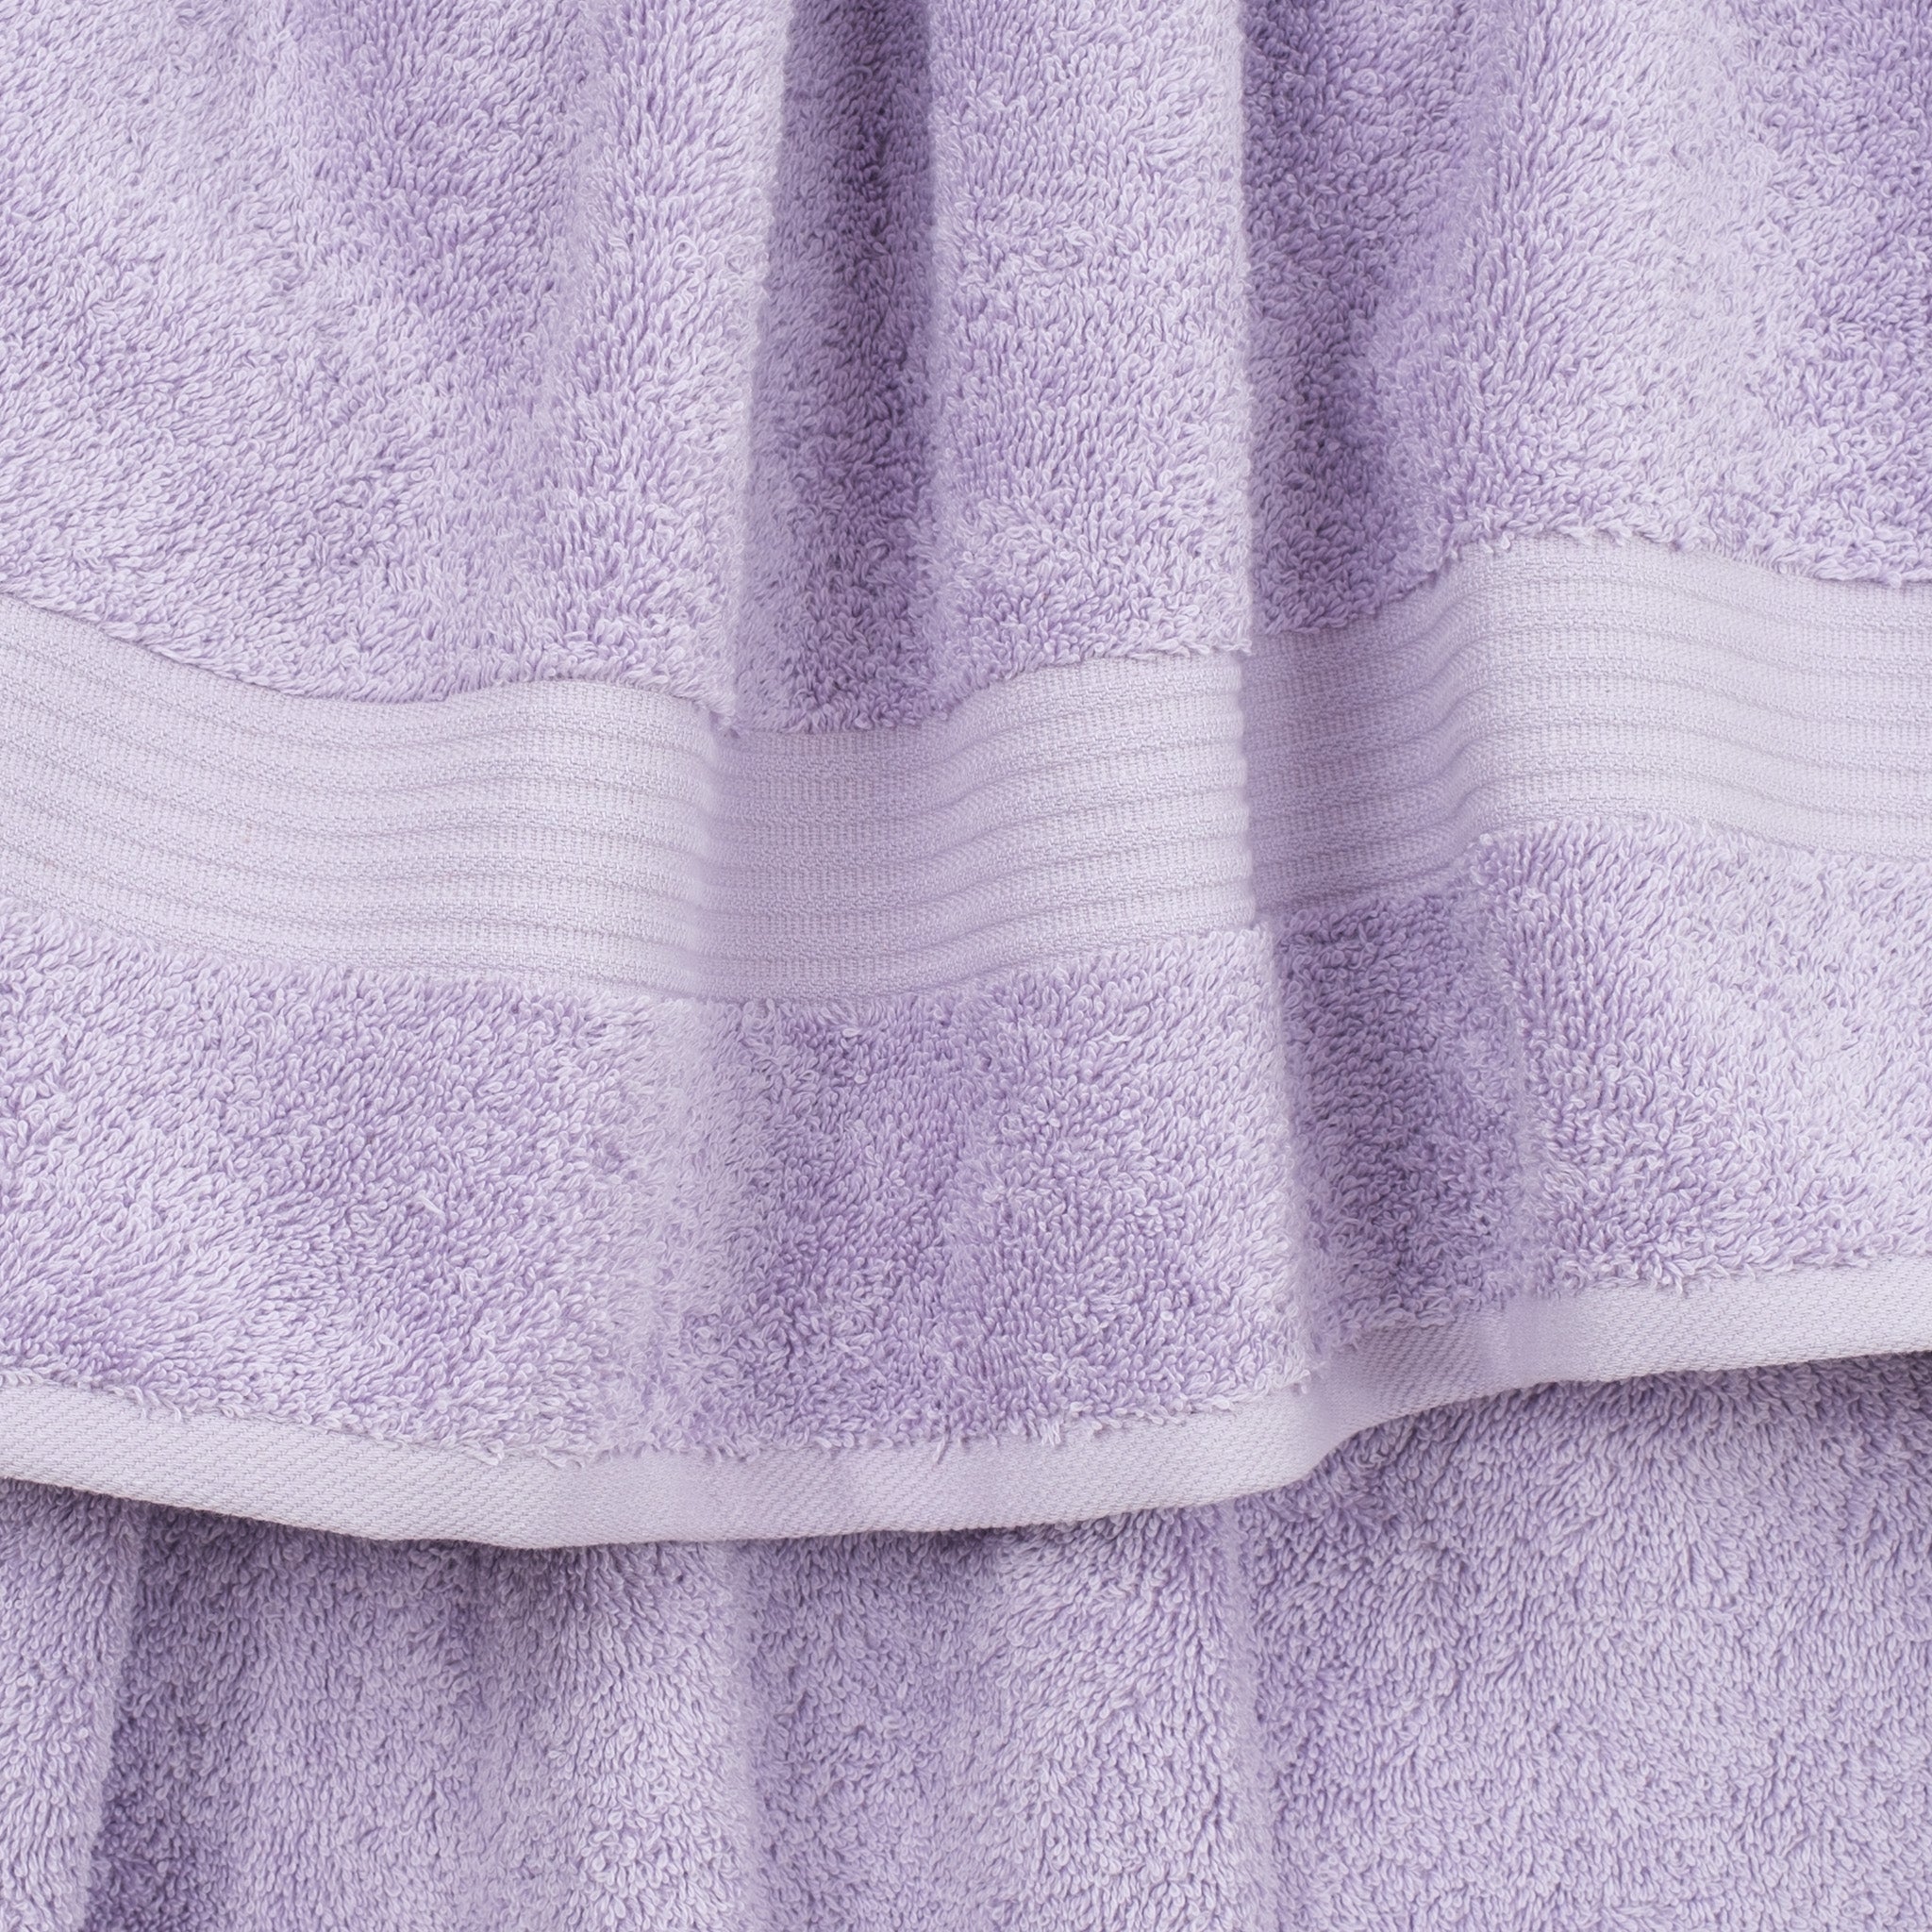 American Soft Linen Bekos 100% Cotton Turkish Towels 6 Piece Bath Towel Set -lilac-03